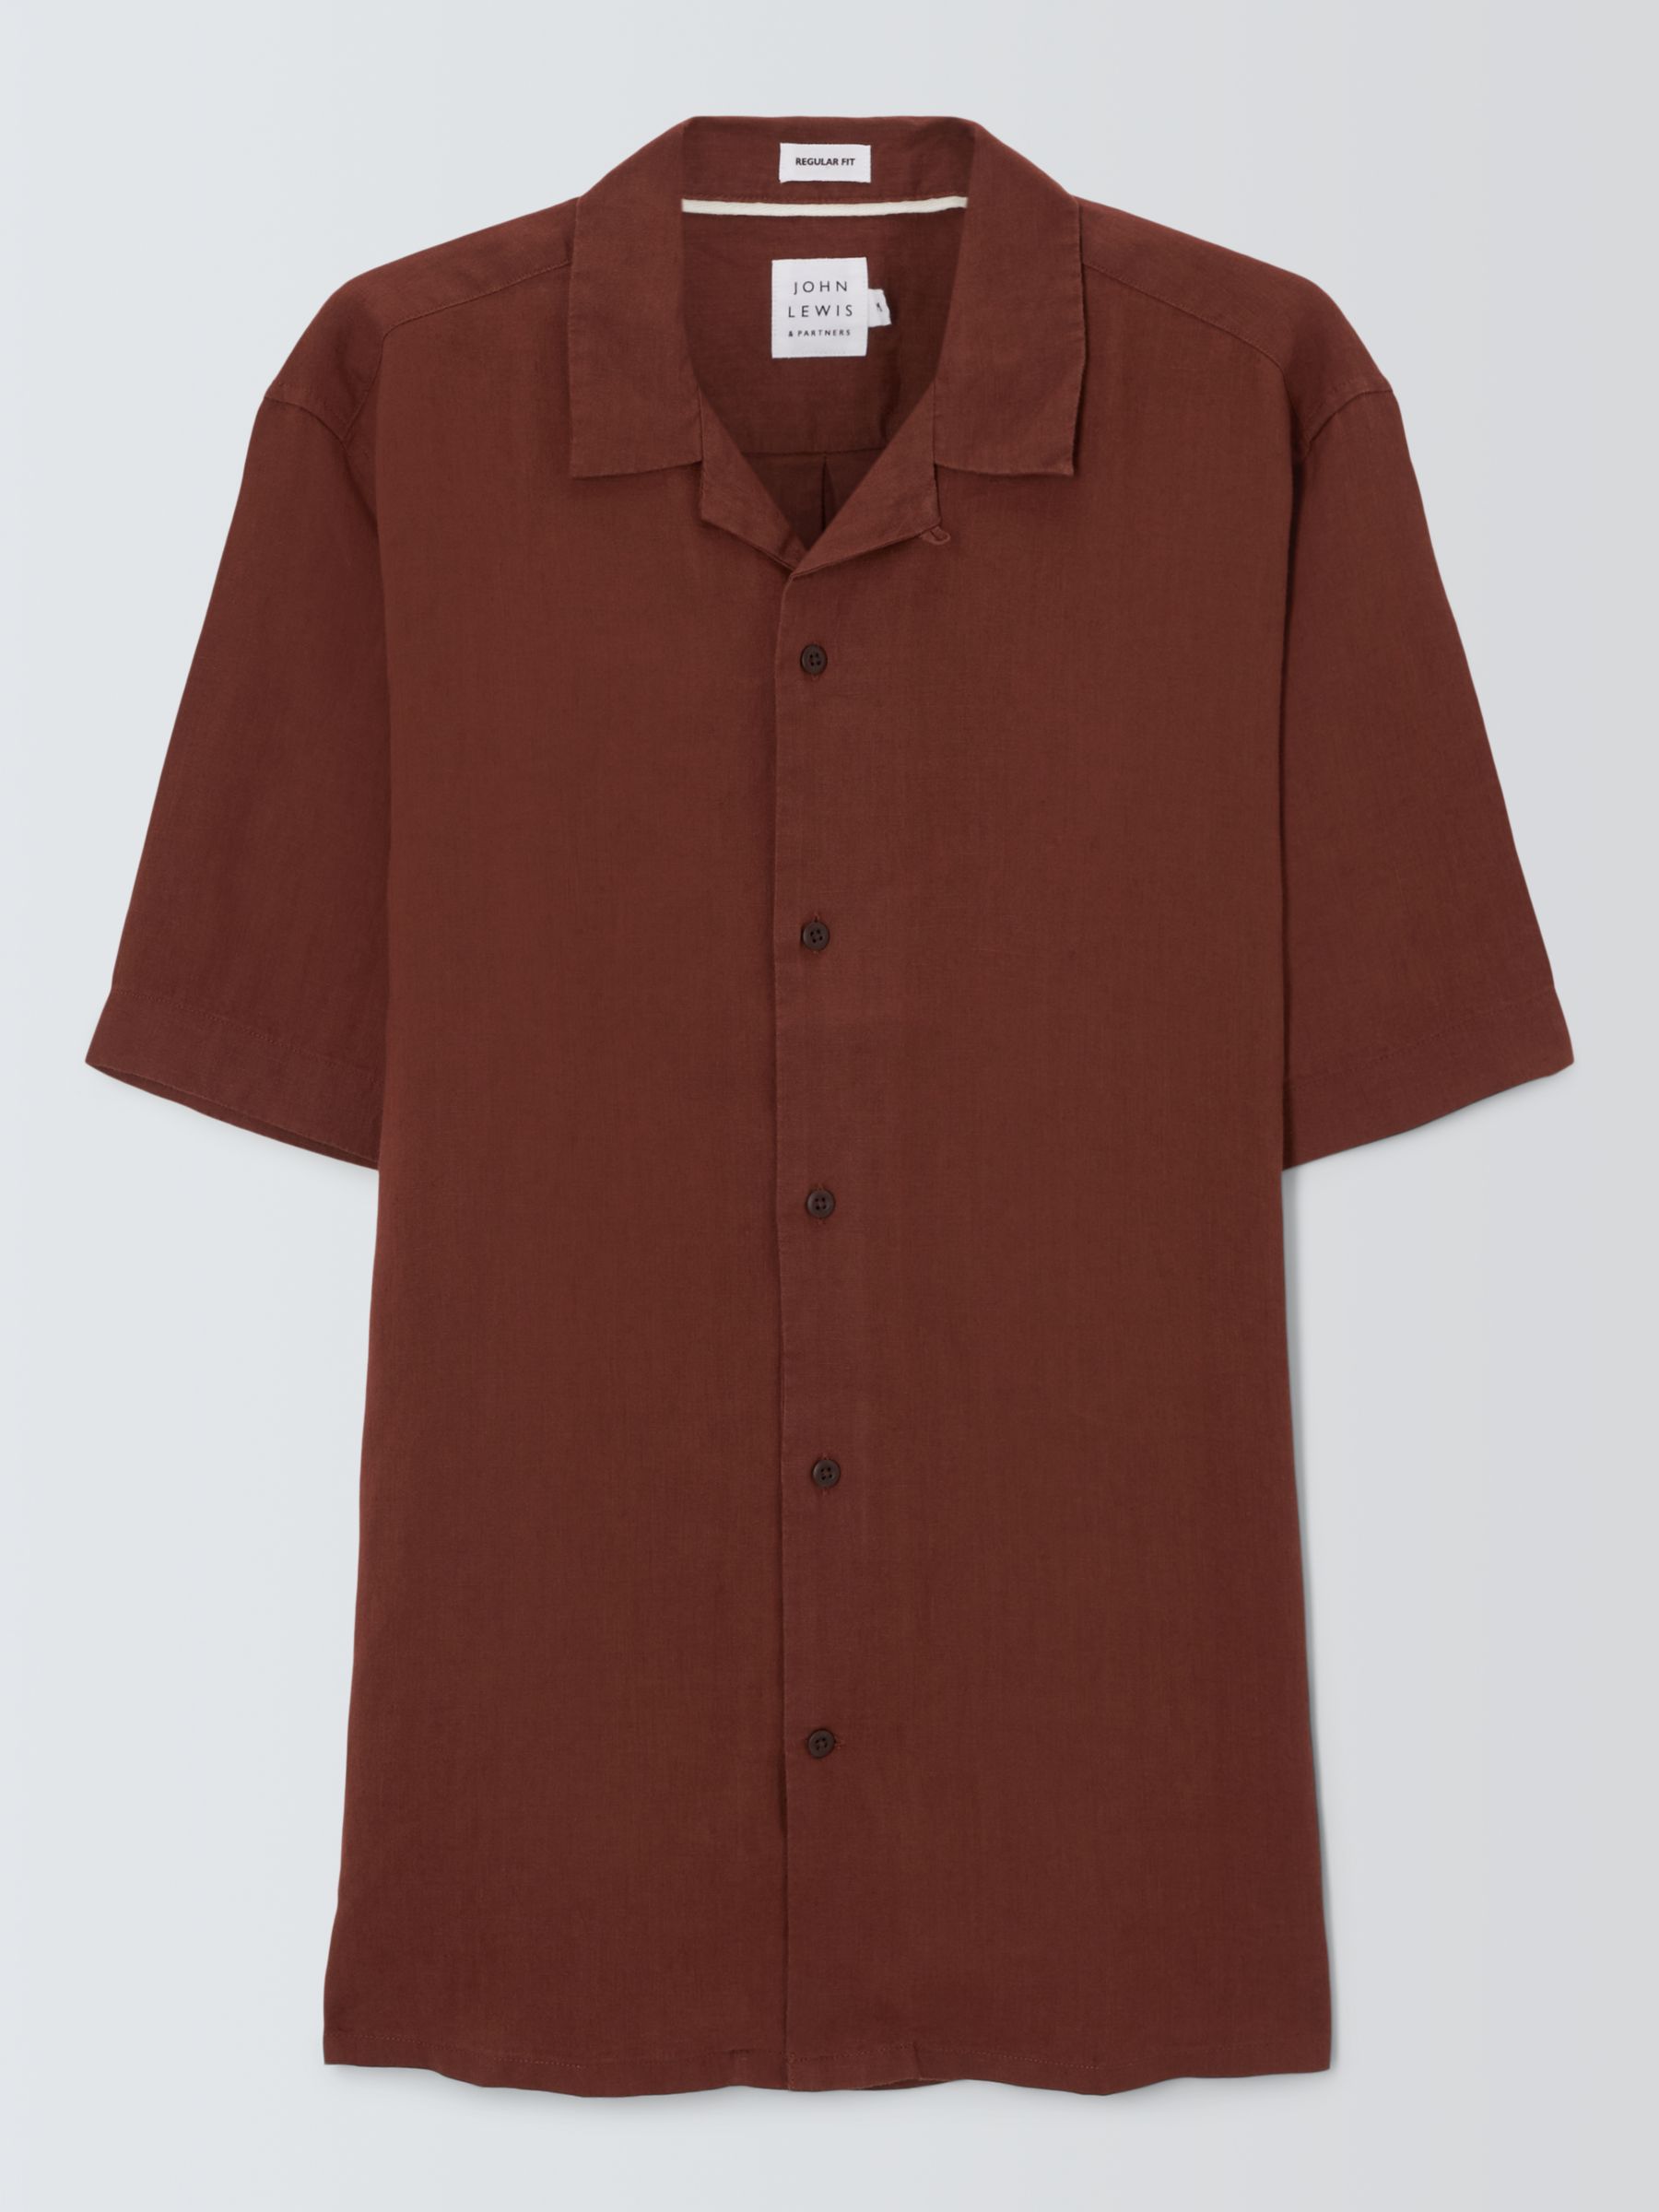 John Lewis Linen Revere Collar Short Sleeve Shirt, Cappuccino, XL